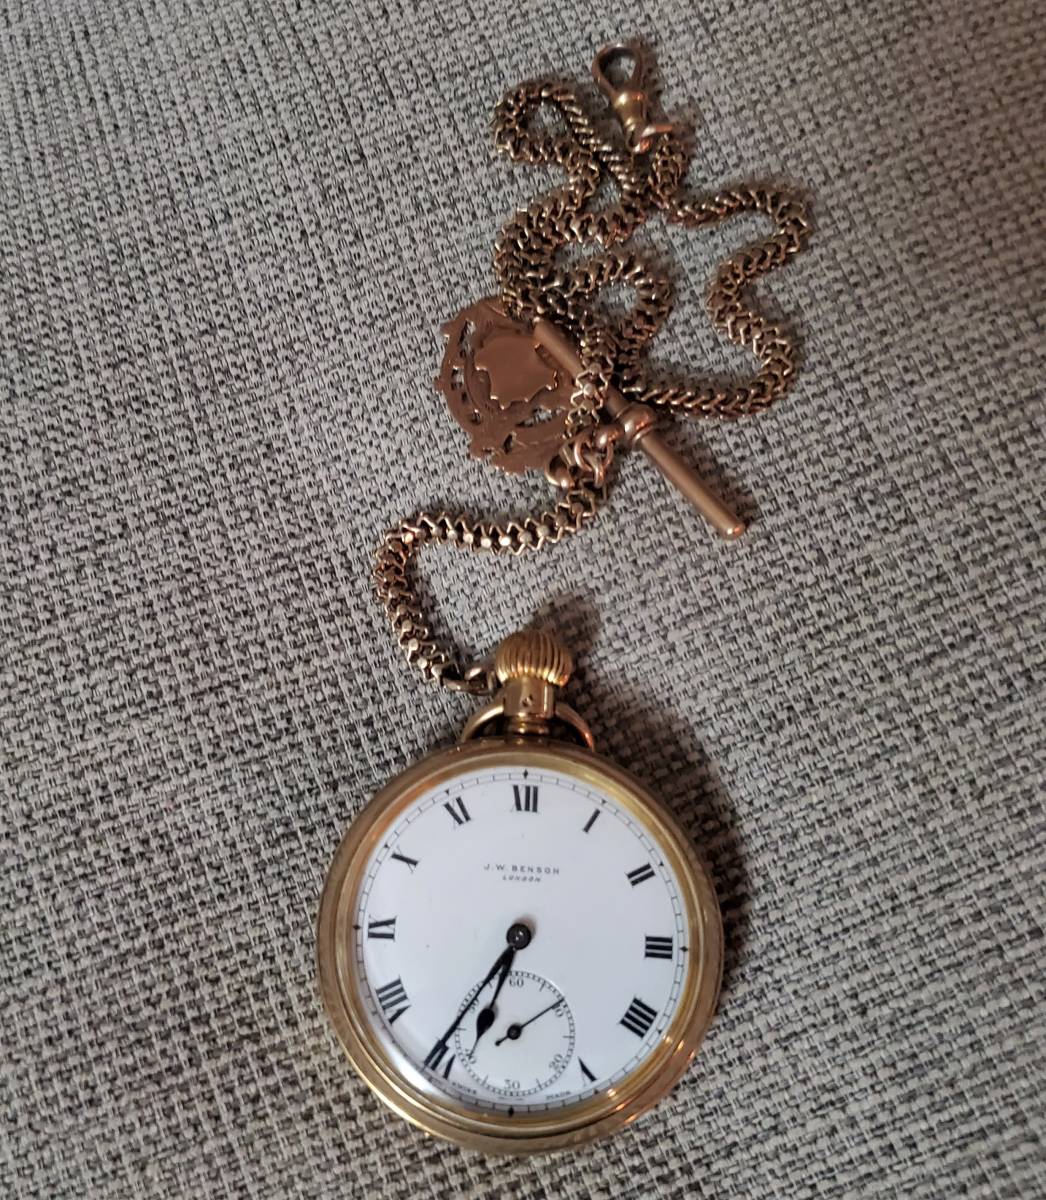 * ценный хорошо прекрасный товар 1931 год производства J.W.Benson 9K 9 чистое золото желтое золото автоматический карманные часы цепь есть Ben son античный Vintage 